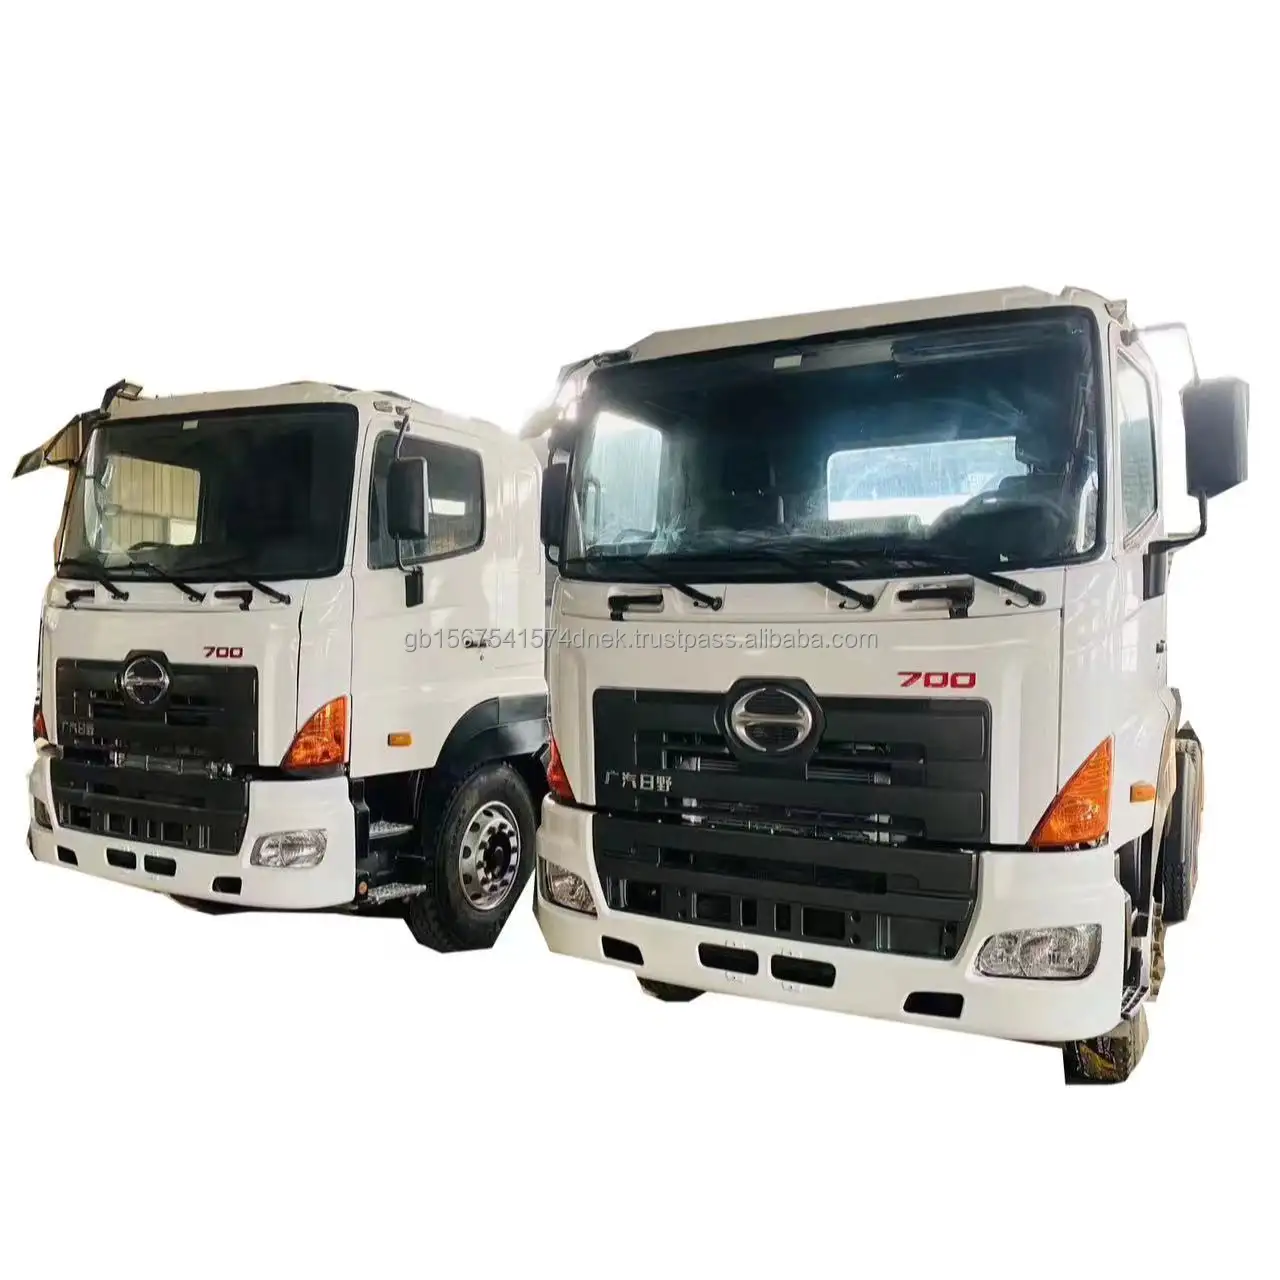 Hino 700 in stock mixer dumper in calcestruzzo importazione giapponese auto parti originali alta q spedizione veloce usato camion rimorchio per la vendita